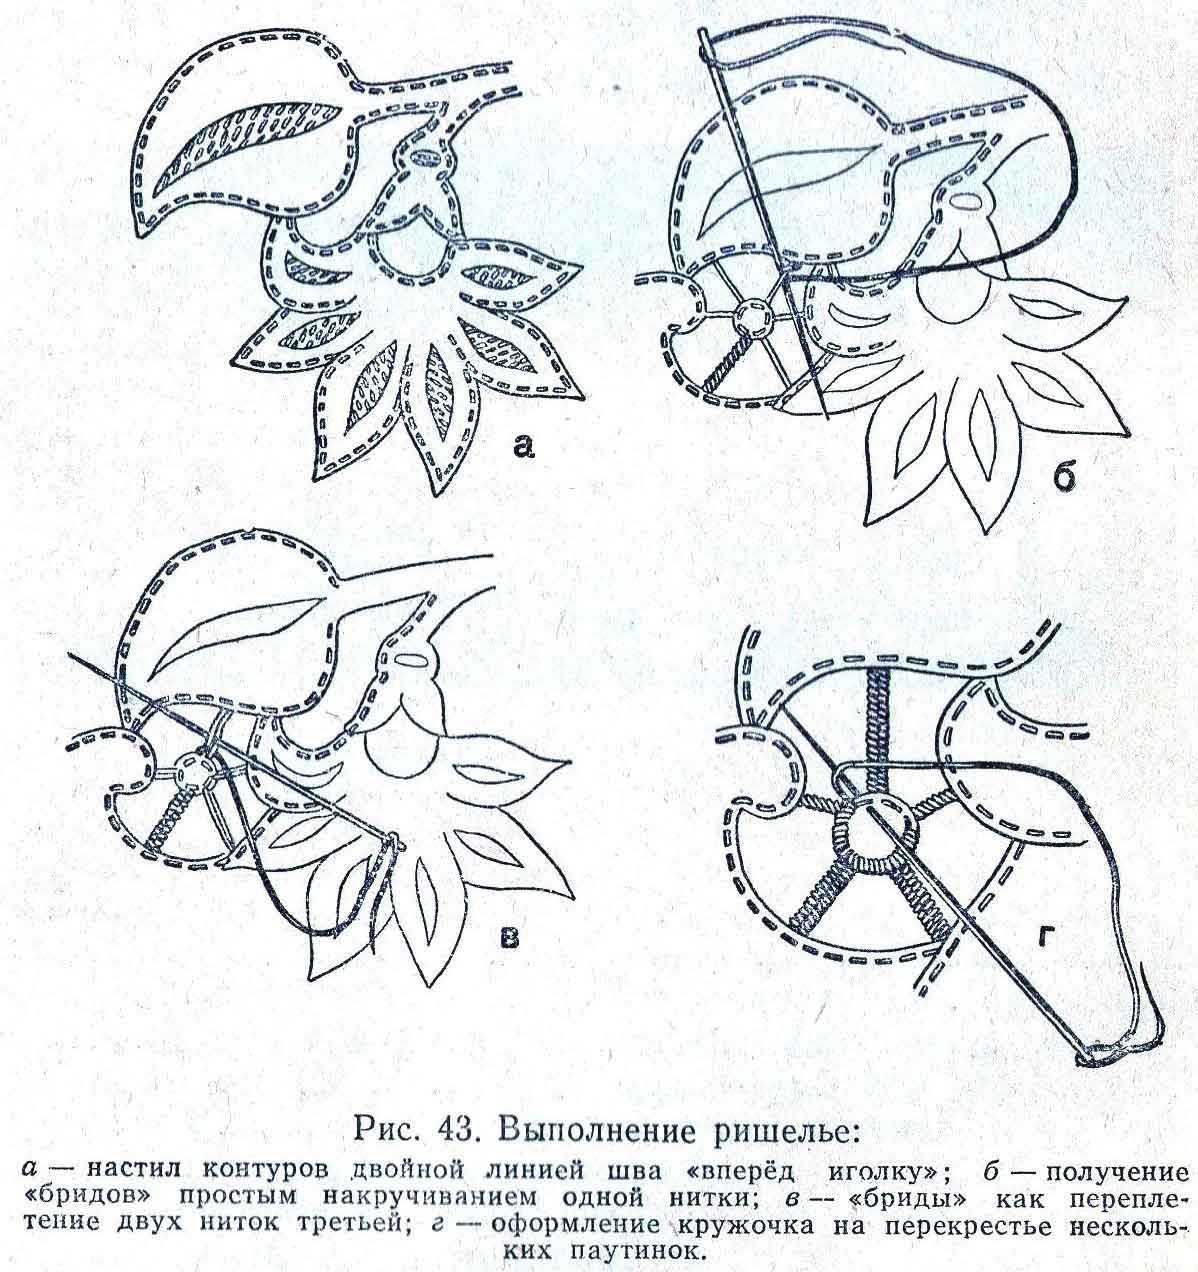 Вышивка ришелье: ажурное кружево своими руками